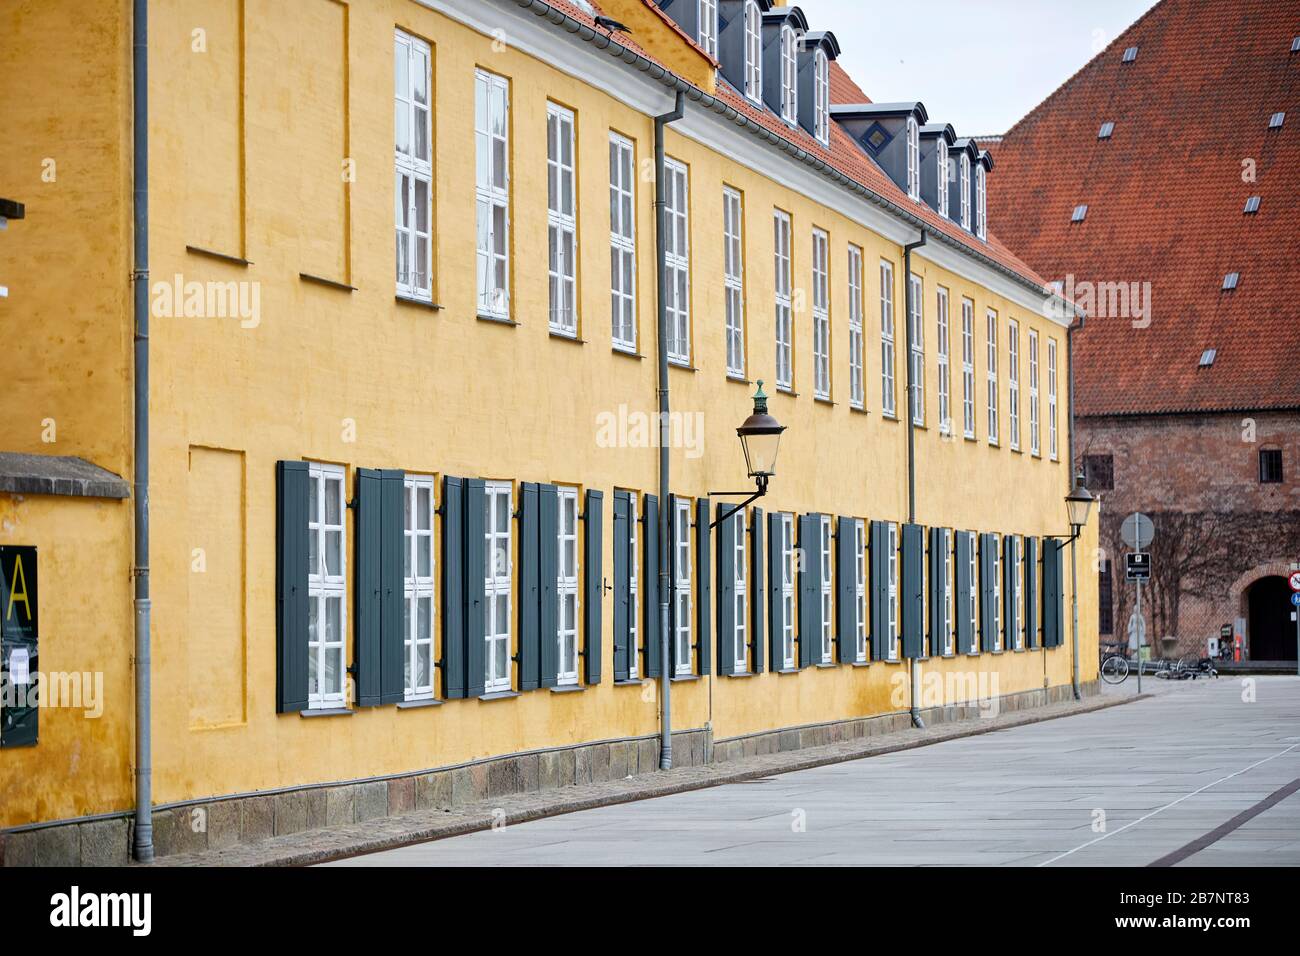 Kopenhagen, die Hauptstadt Dänemarks, ein niedriges gelbes Gebäude hinter  der ehemaligen Heulagerung ab etwa dem Jahr 1799, Teil der Barracks der  Kaisergarde Vester Voldgade Stockfotografie - Alamy